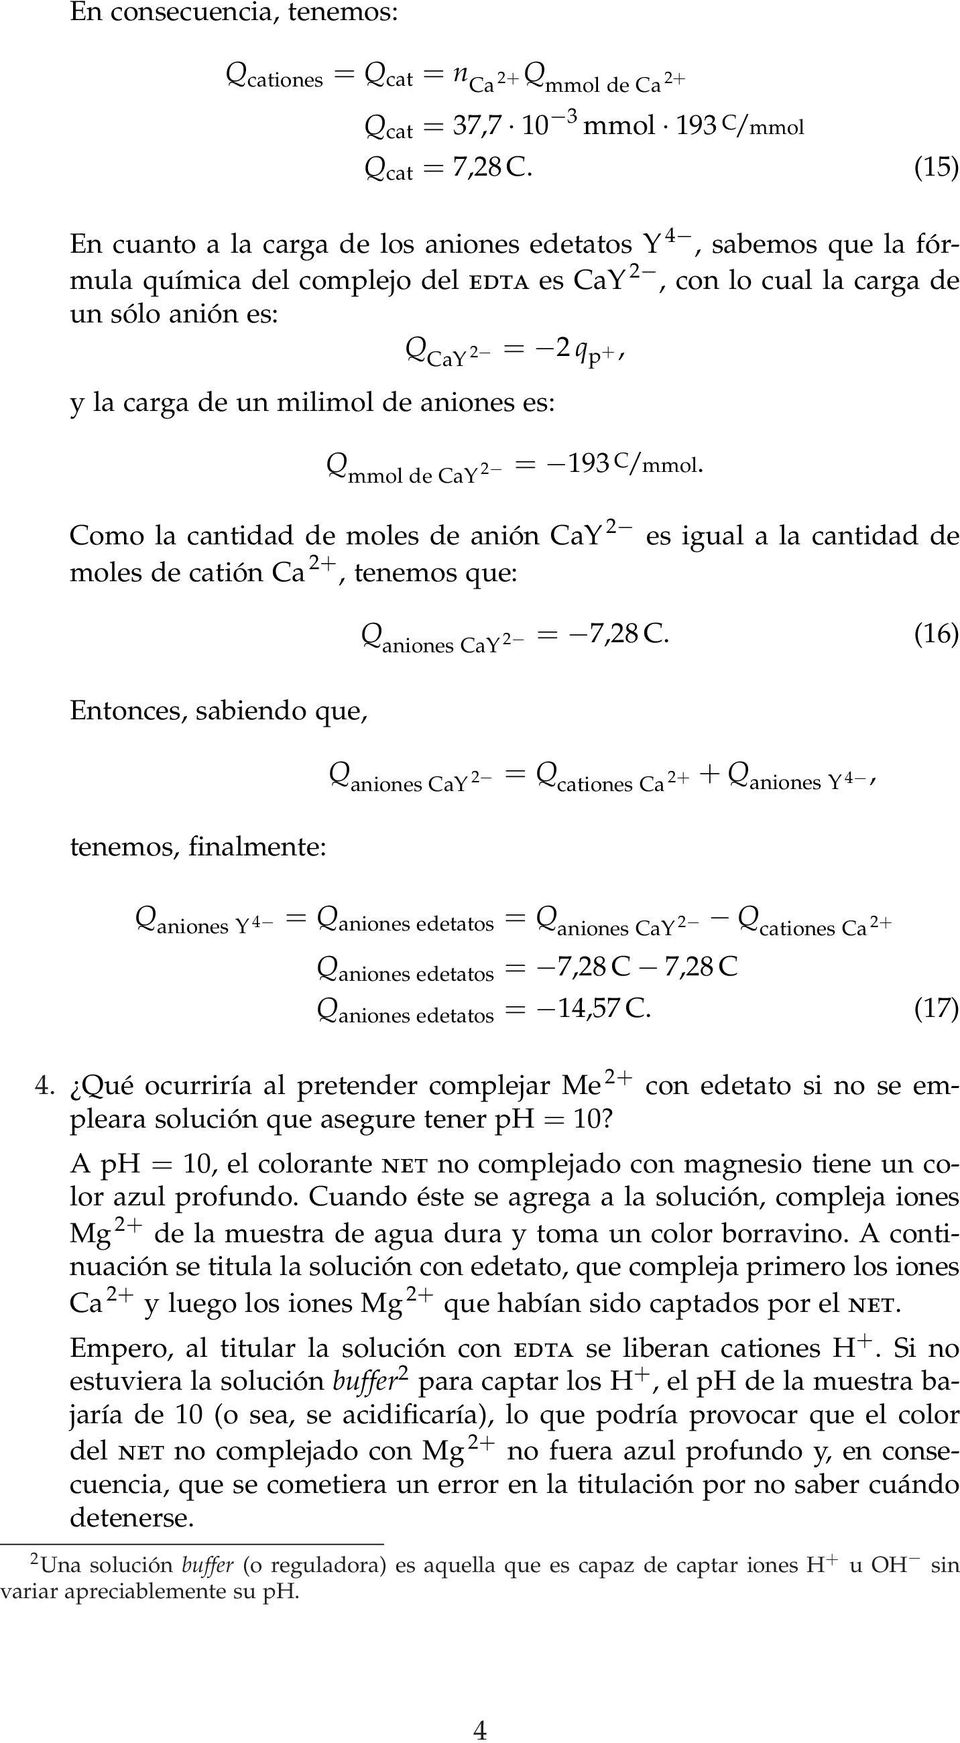 aniones es: Q mmo de CaY 2 = 193 C/mmo. Como a cantidad de moes de anión CaY 2 es igua a a cantidad de moes de catión Ca 2+, tenemos que: Q aniones CaY 2 = 7,28 C.